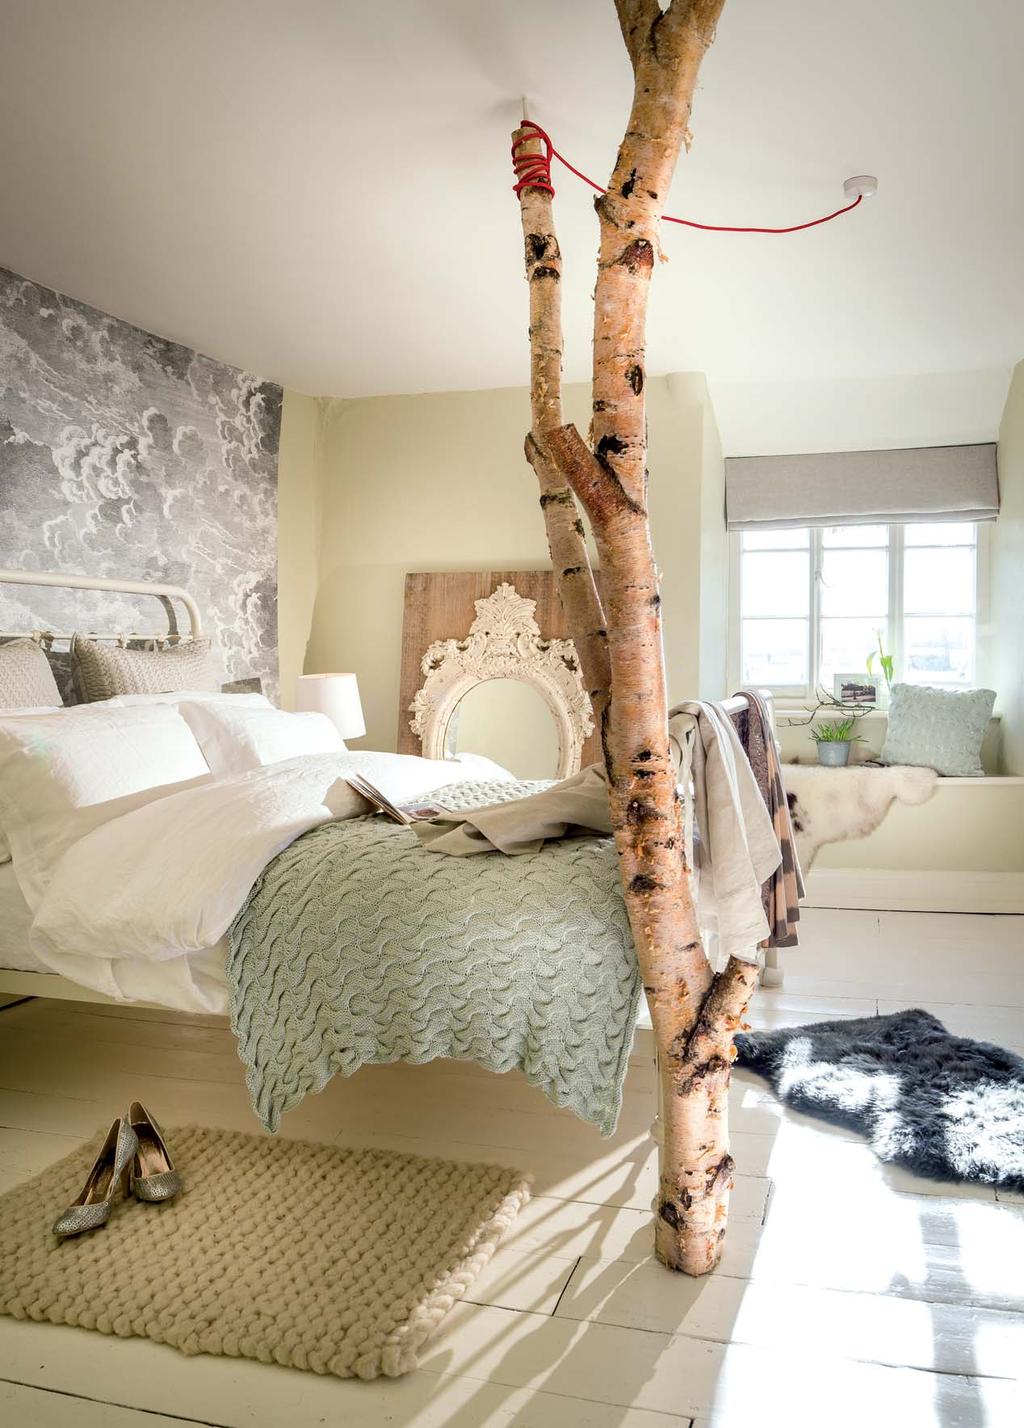 La suite che sembra un nido, con il letto incorniciato da un tronco d albero.